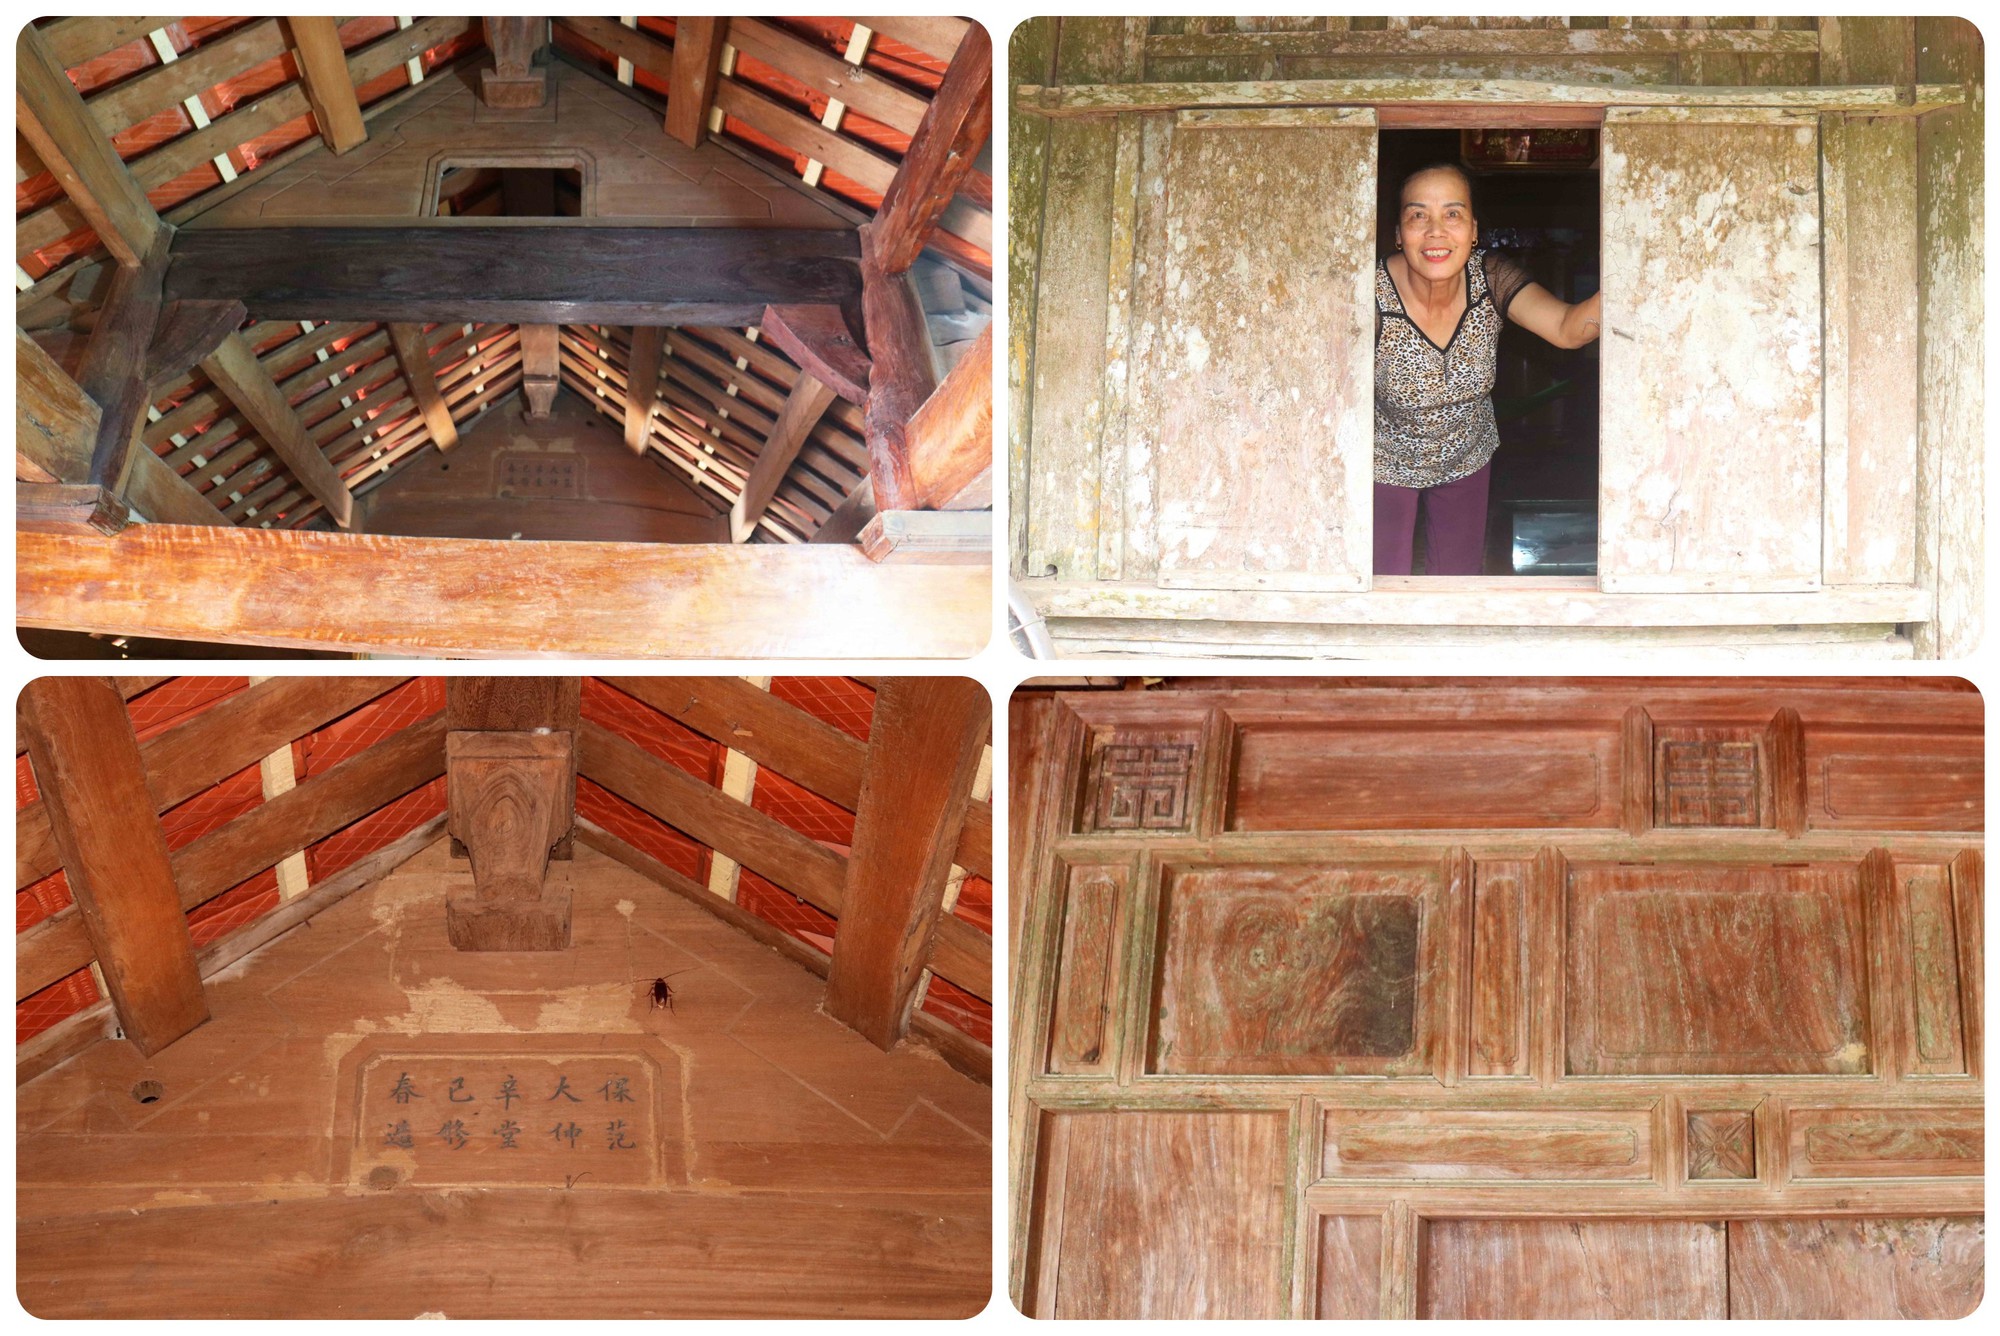 Cận cảnh nhà cổ ở làng quê xã Kim Liên của Nghệ An, có một nhà gỗ từ thời nhà Lê, đã gần 300 tuổi- Ảnh 5.